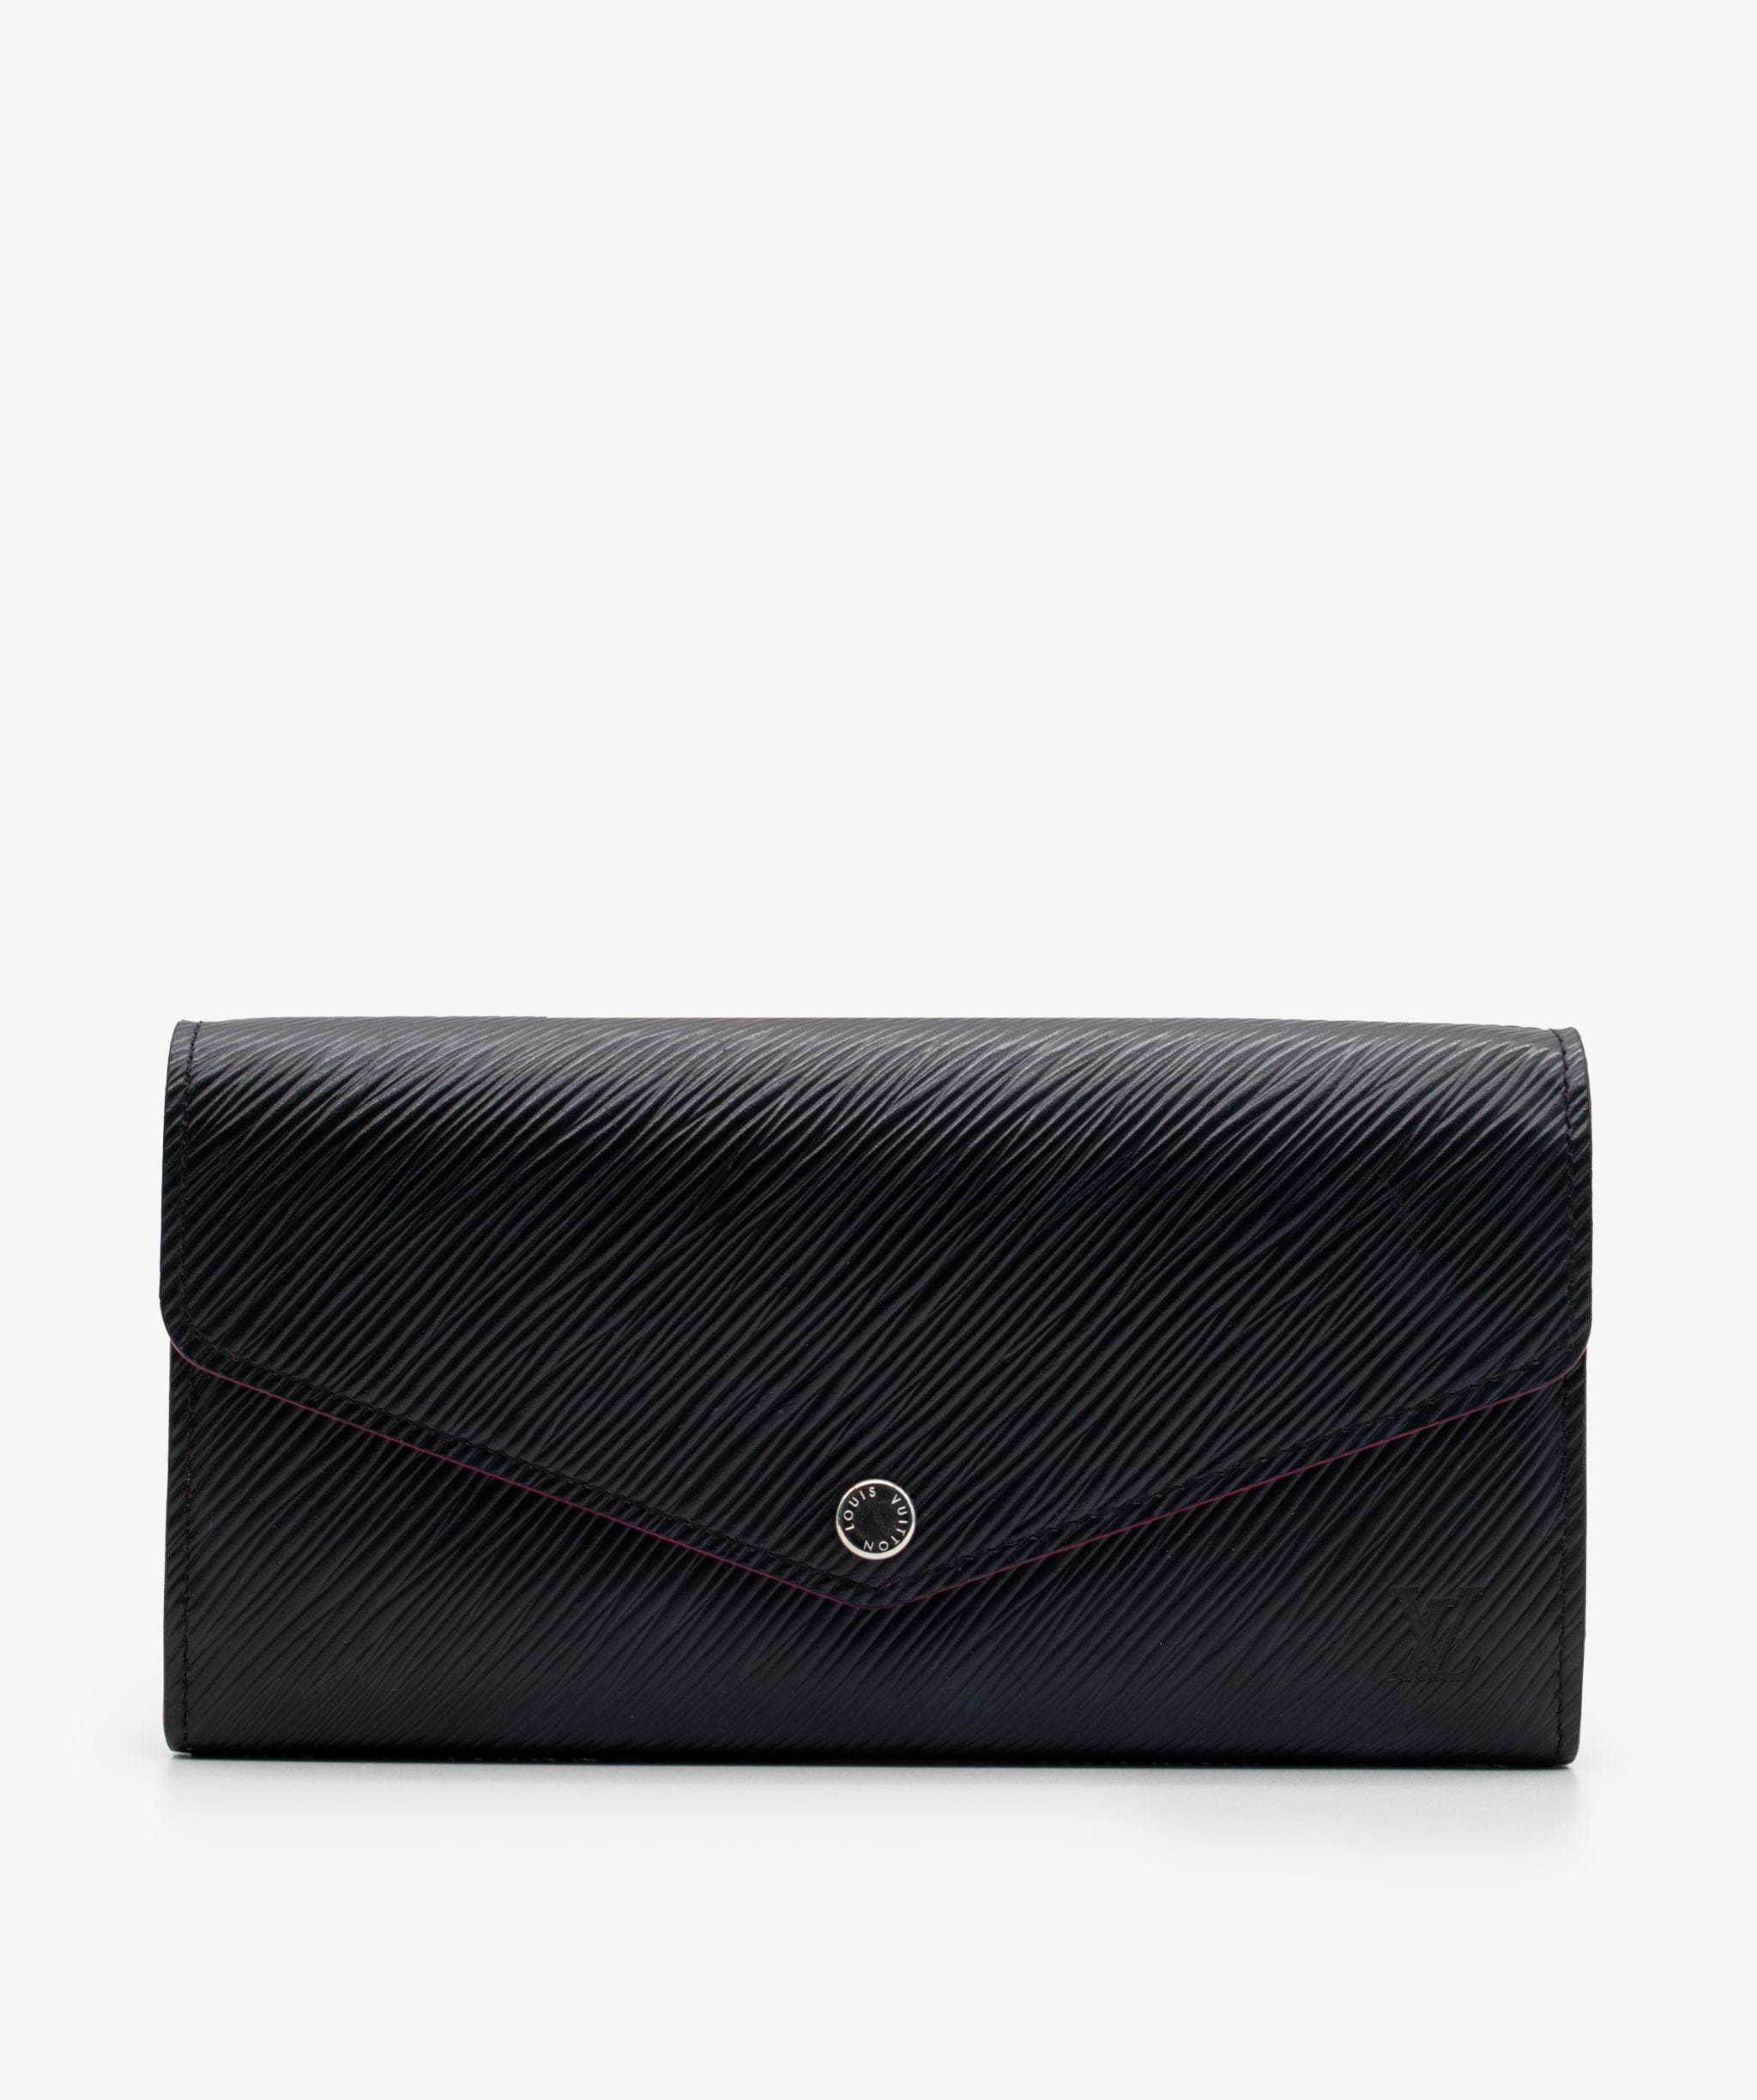 Louis Vuitton M62213 Portefeuille Sarah Wallet Monogram Empreinte Leather  Berry